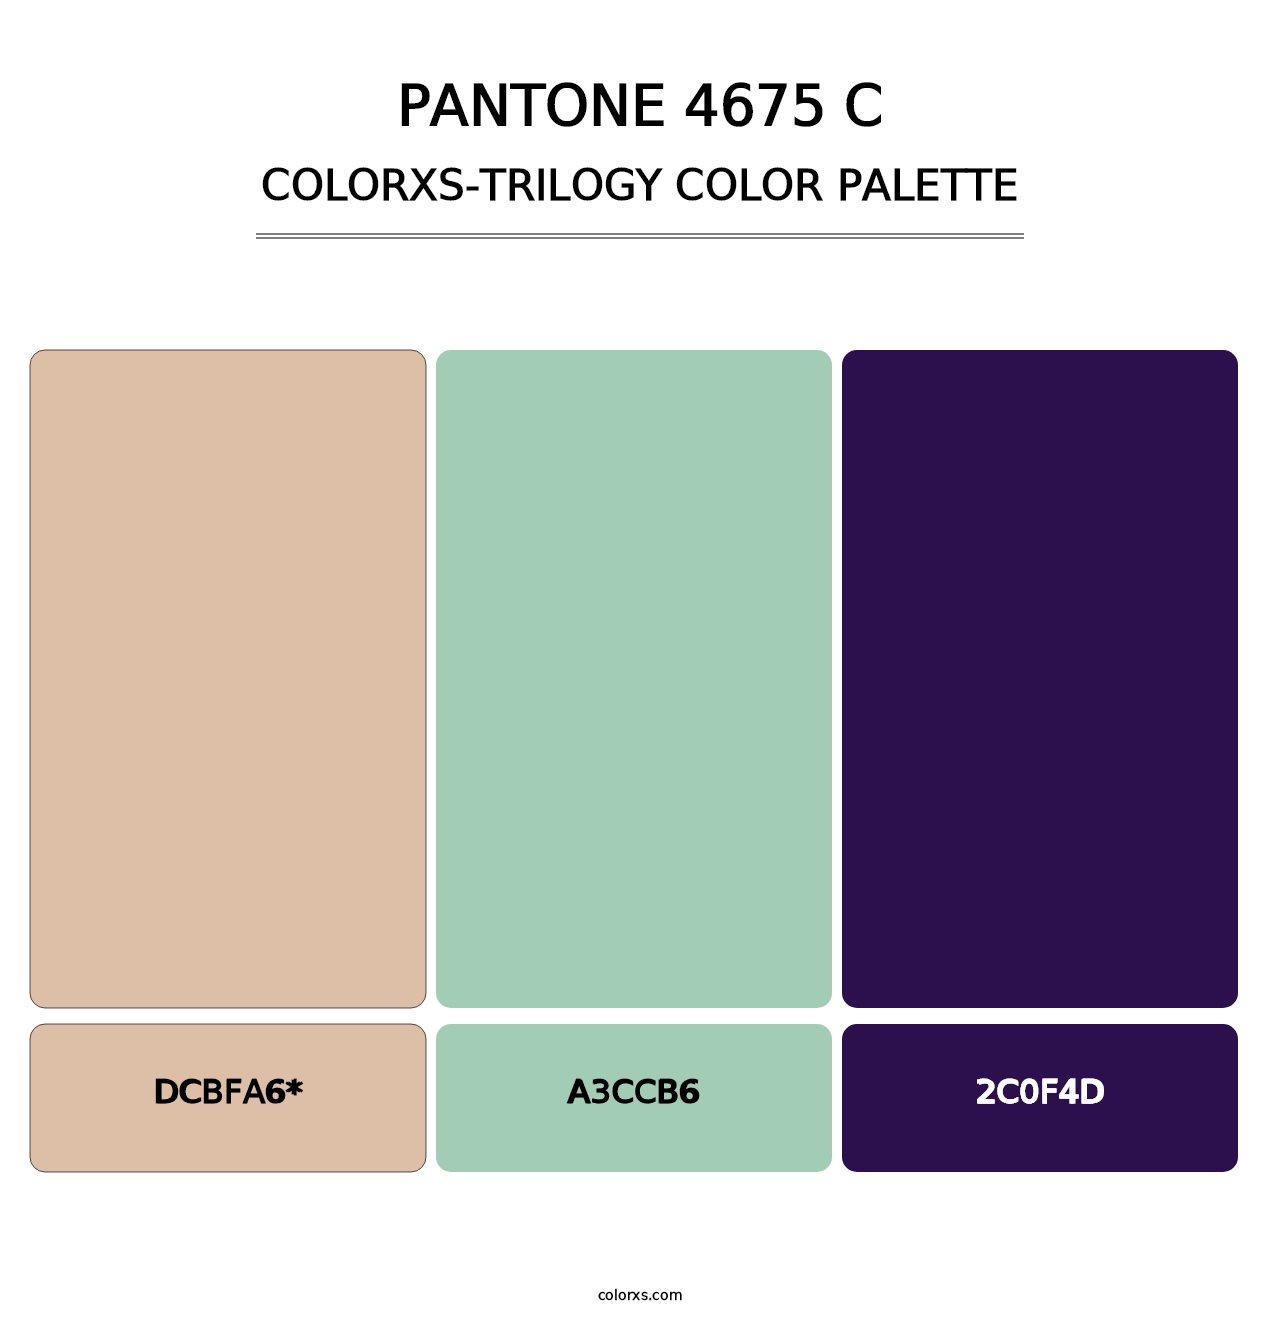 PANTONE 4675 C - Colorxs Trilogy Palette